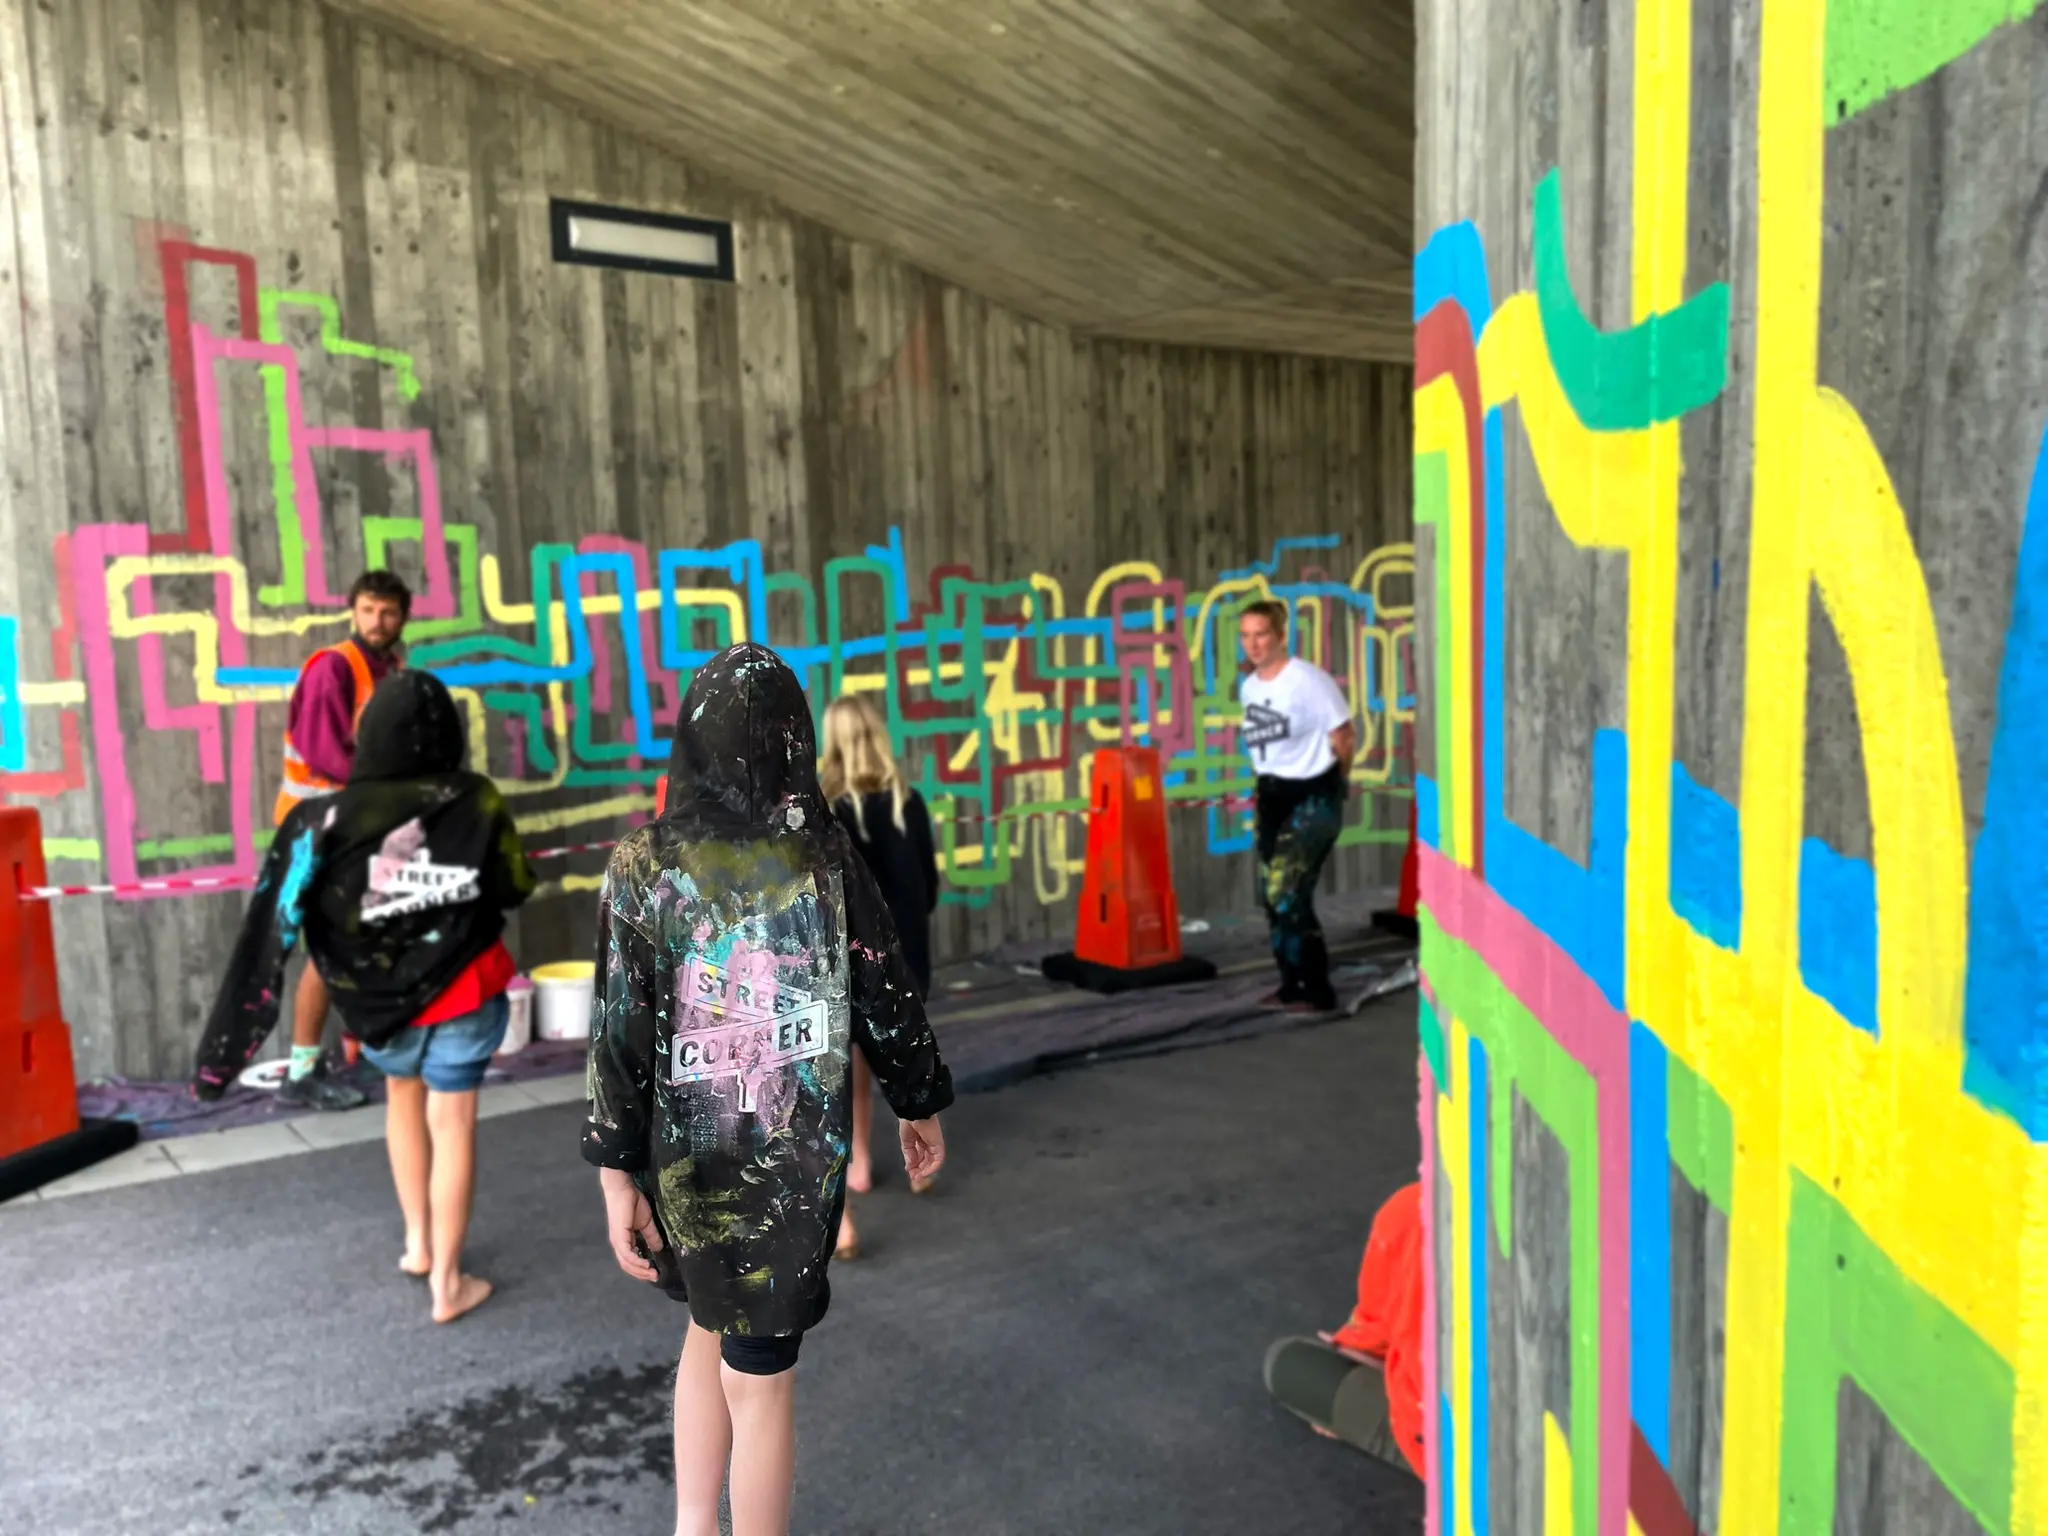 Ryggtavla på ett barn med svart huvtröja med färgrester på i en gångtunnel med färgglad konst på väggarna.